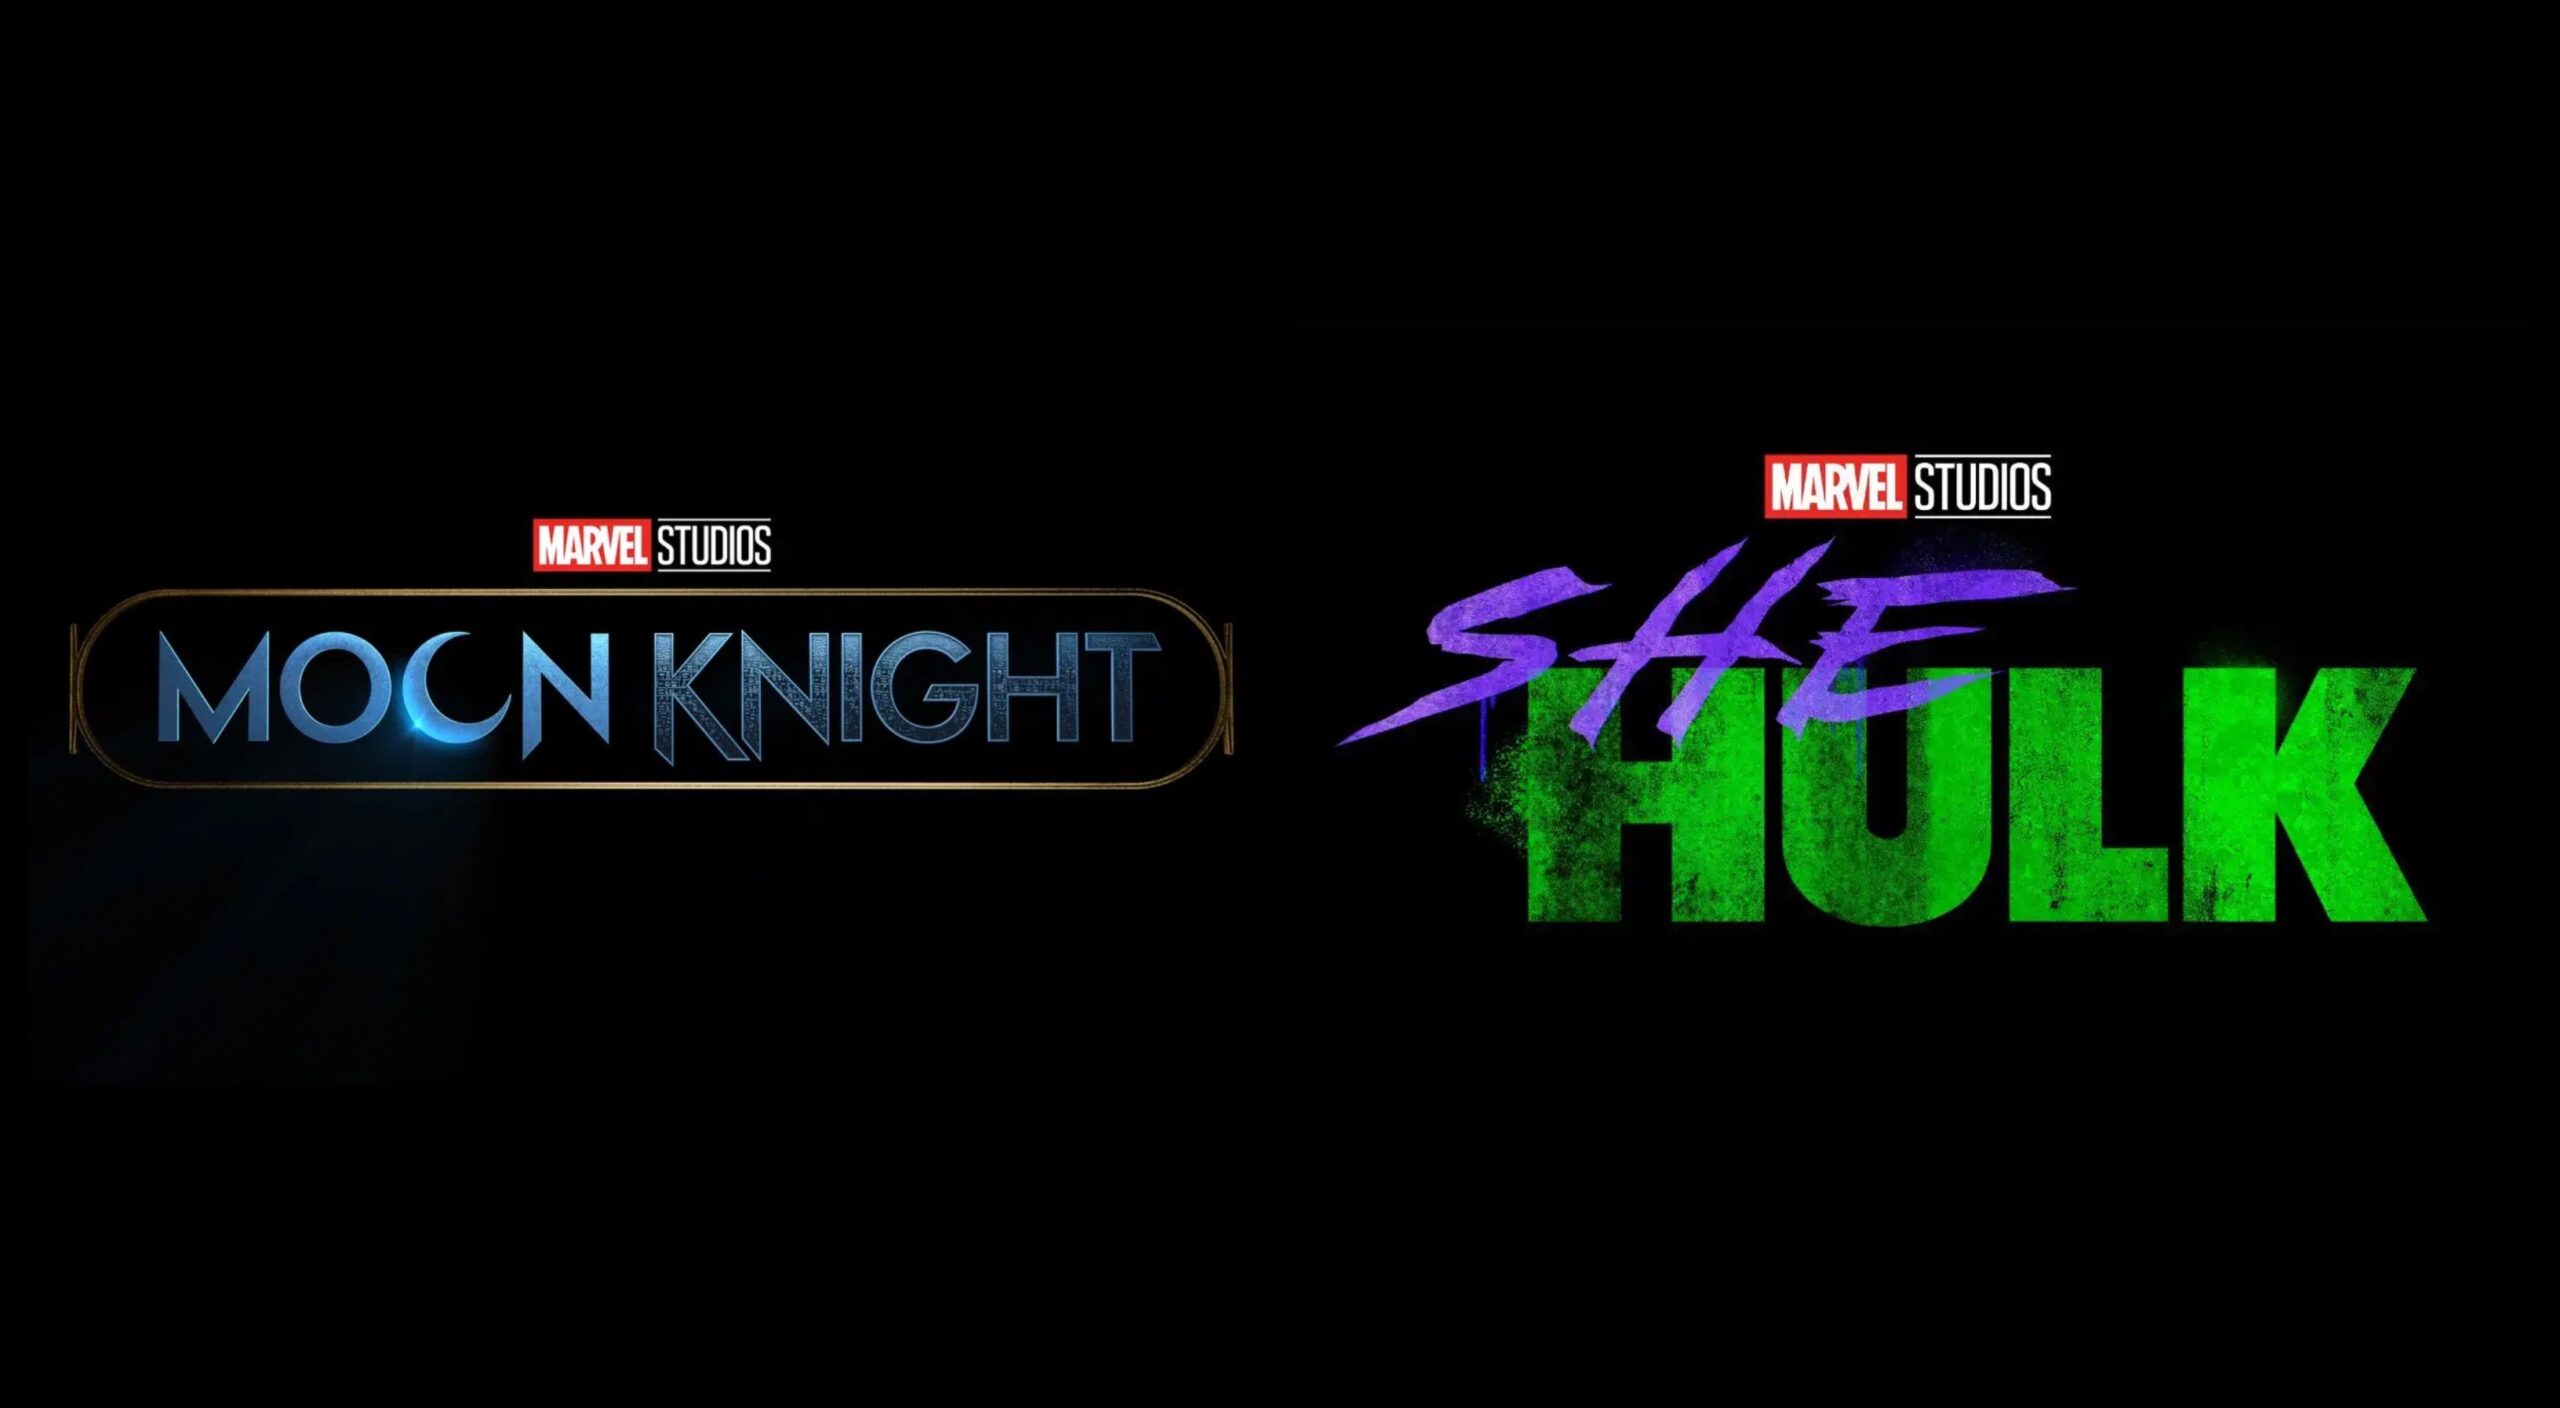 Marvel Studios Moon Knight and She-Hulk Logos